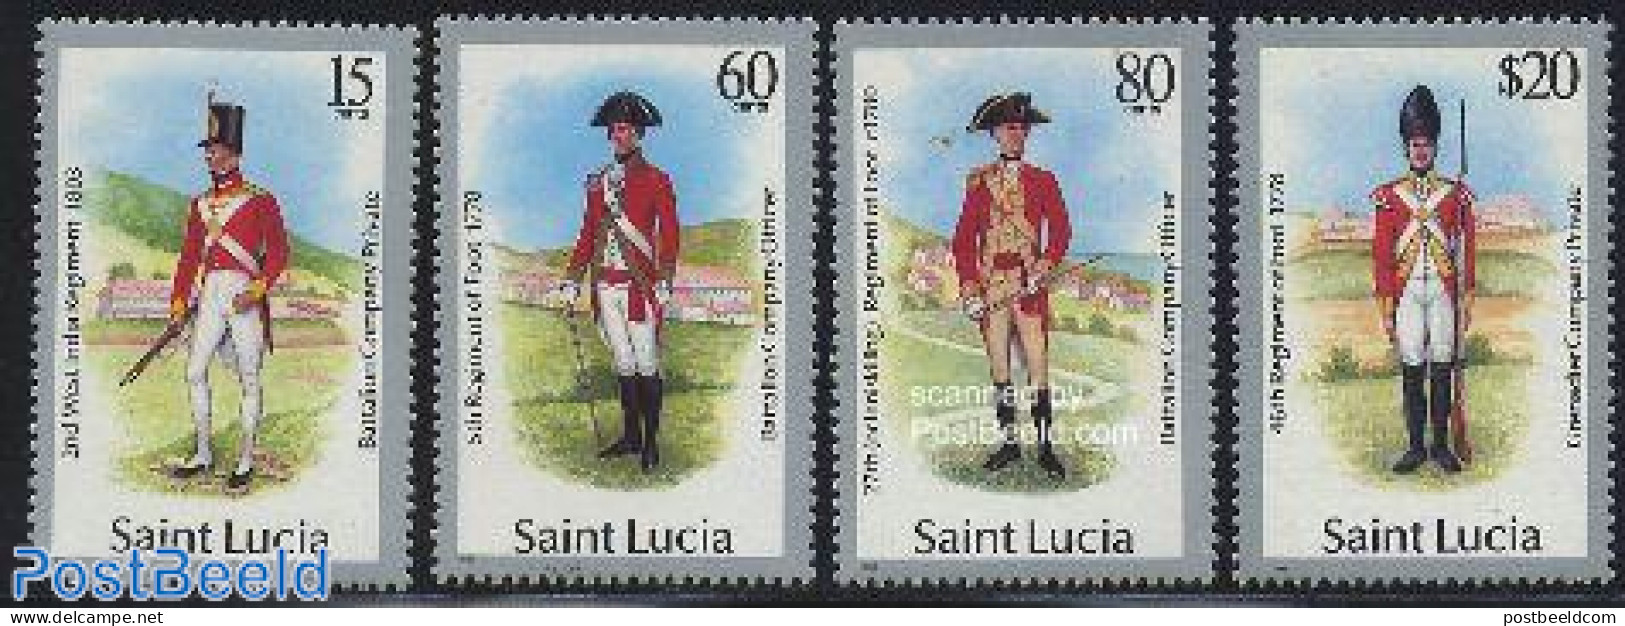 Saint Lucia 1987 Uniforms 4v, Mint NH, Various - Uniforms - Kostums